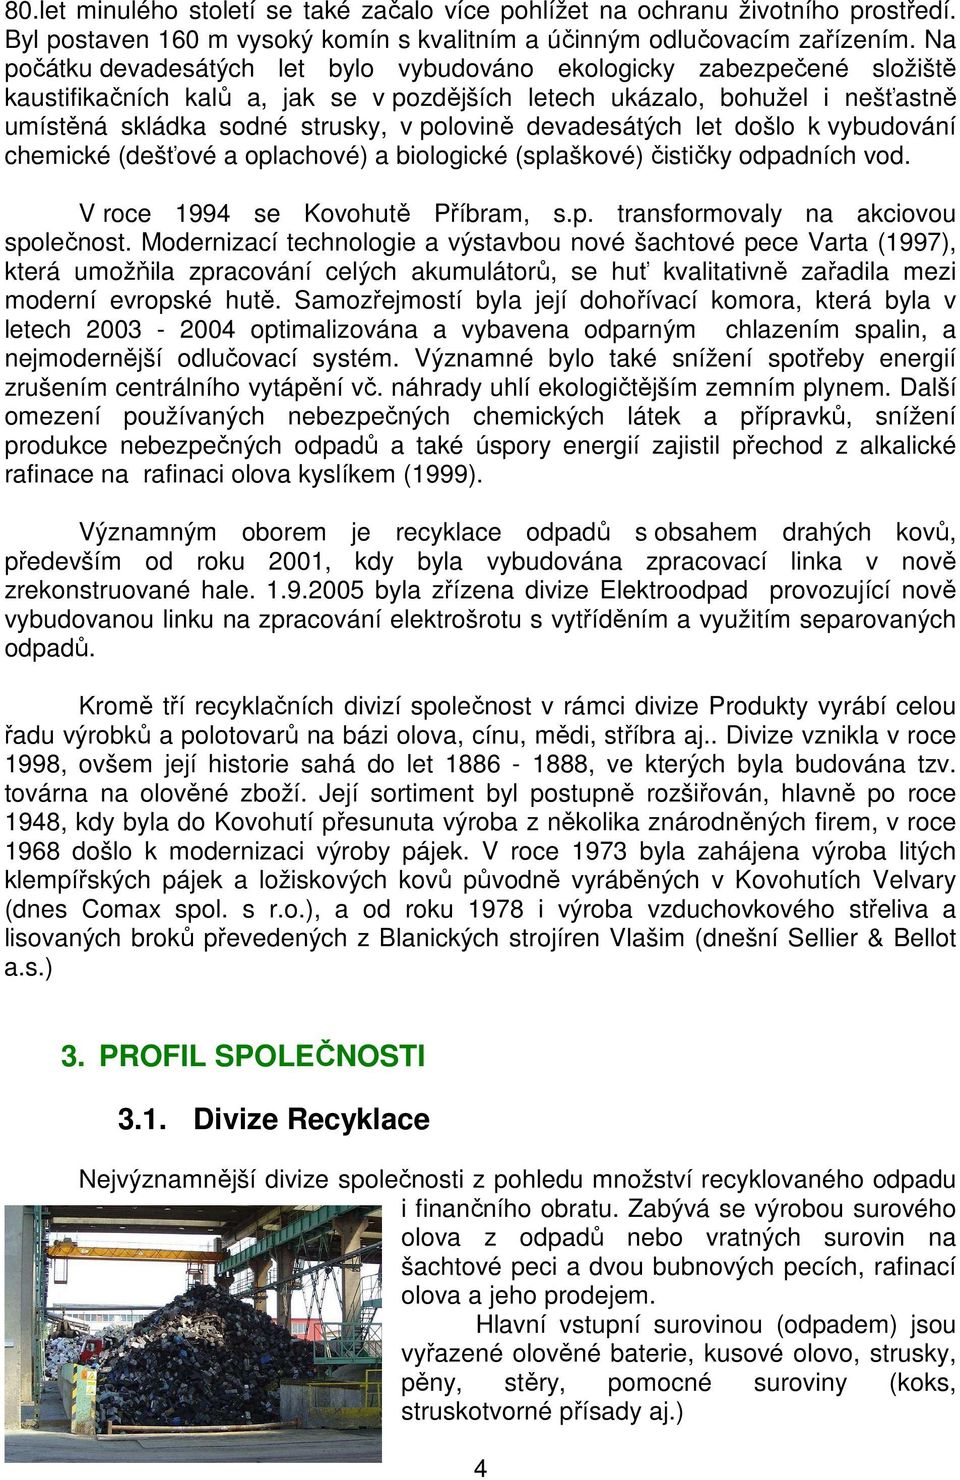 devadesátých let došlo k vybudování chemické (dešťové a oplachové) a biologické (splaškové) čističky odpadních vod. V roce 1994 se Kovohutě Příbram, s.p. transformovaly na akciovou společnost.